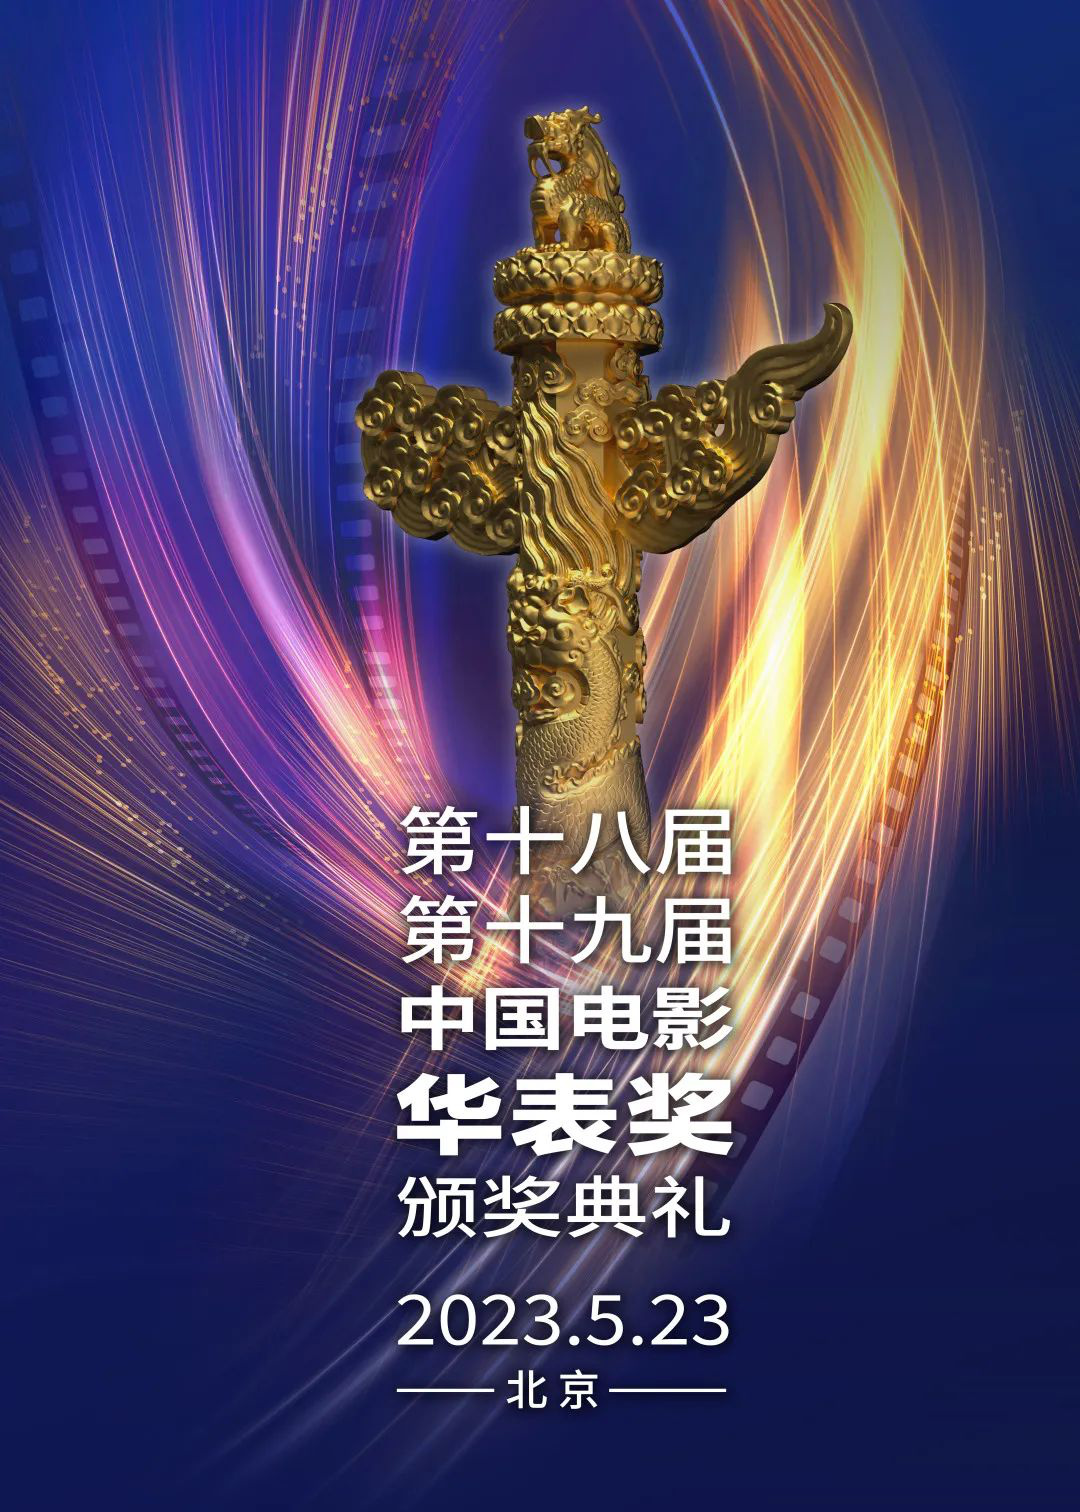 第十八届、第十九届中国电影华表奖获奖名单揭晓